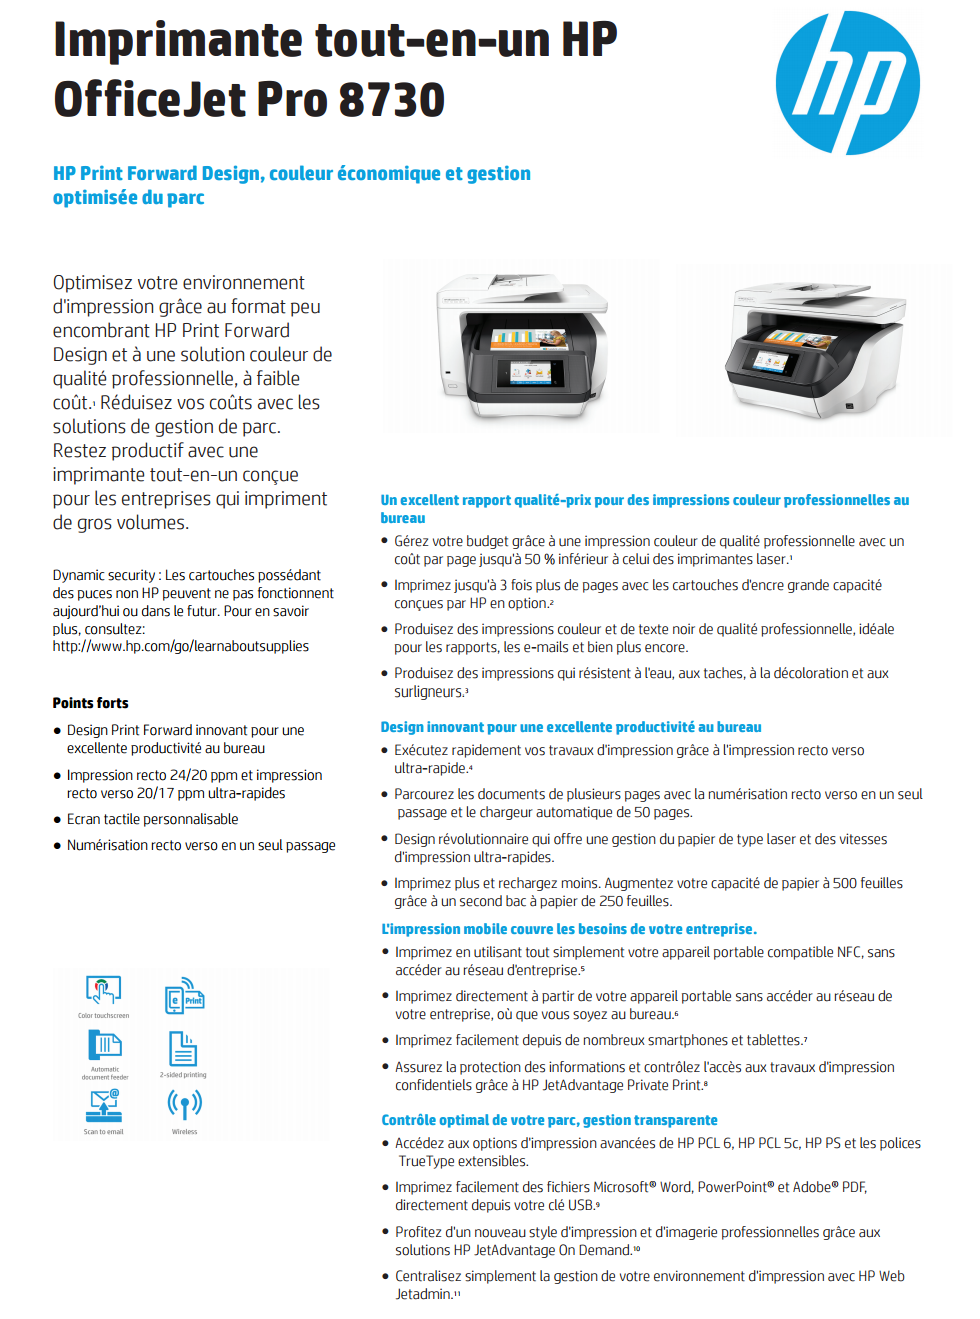 Acheter Imprimante multifonction Jet d’encre HP OfficeJet Pro 8730 (D9L20A) Maroc